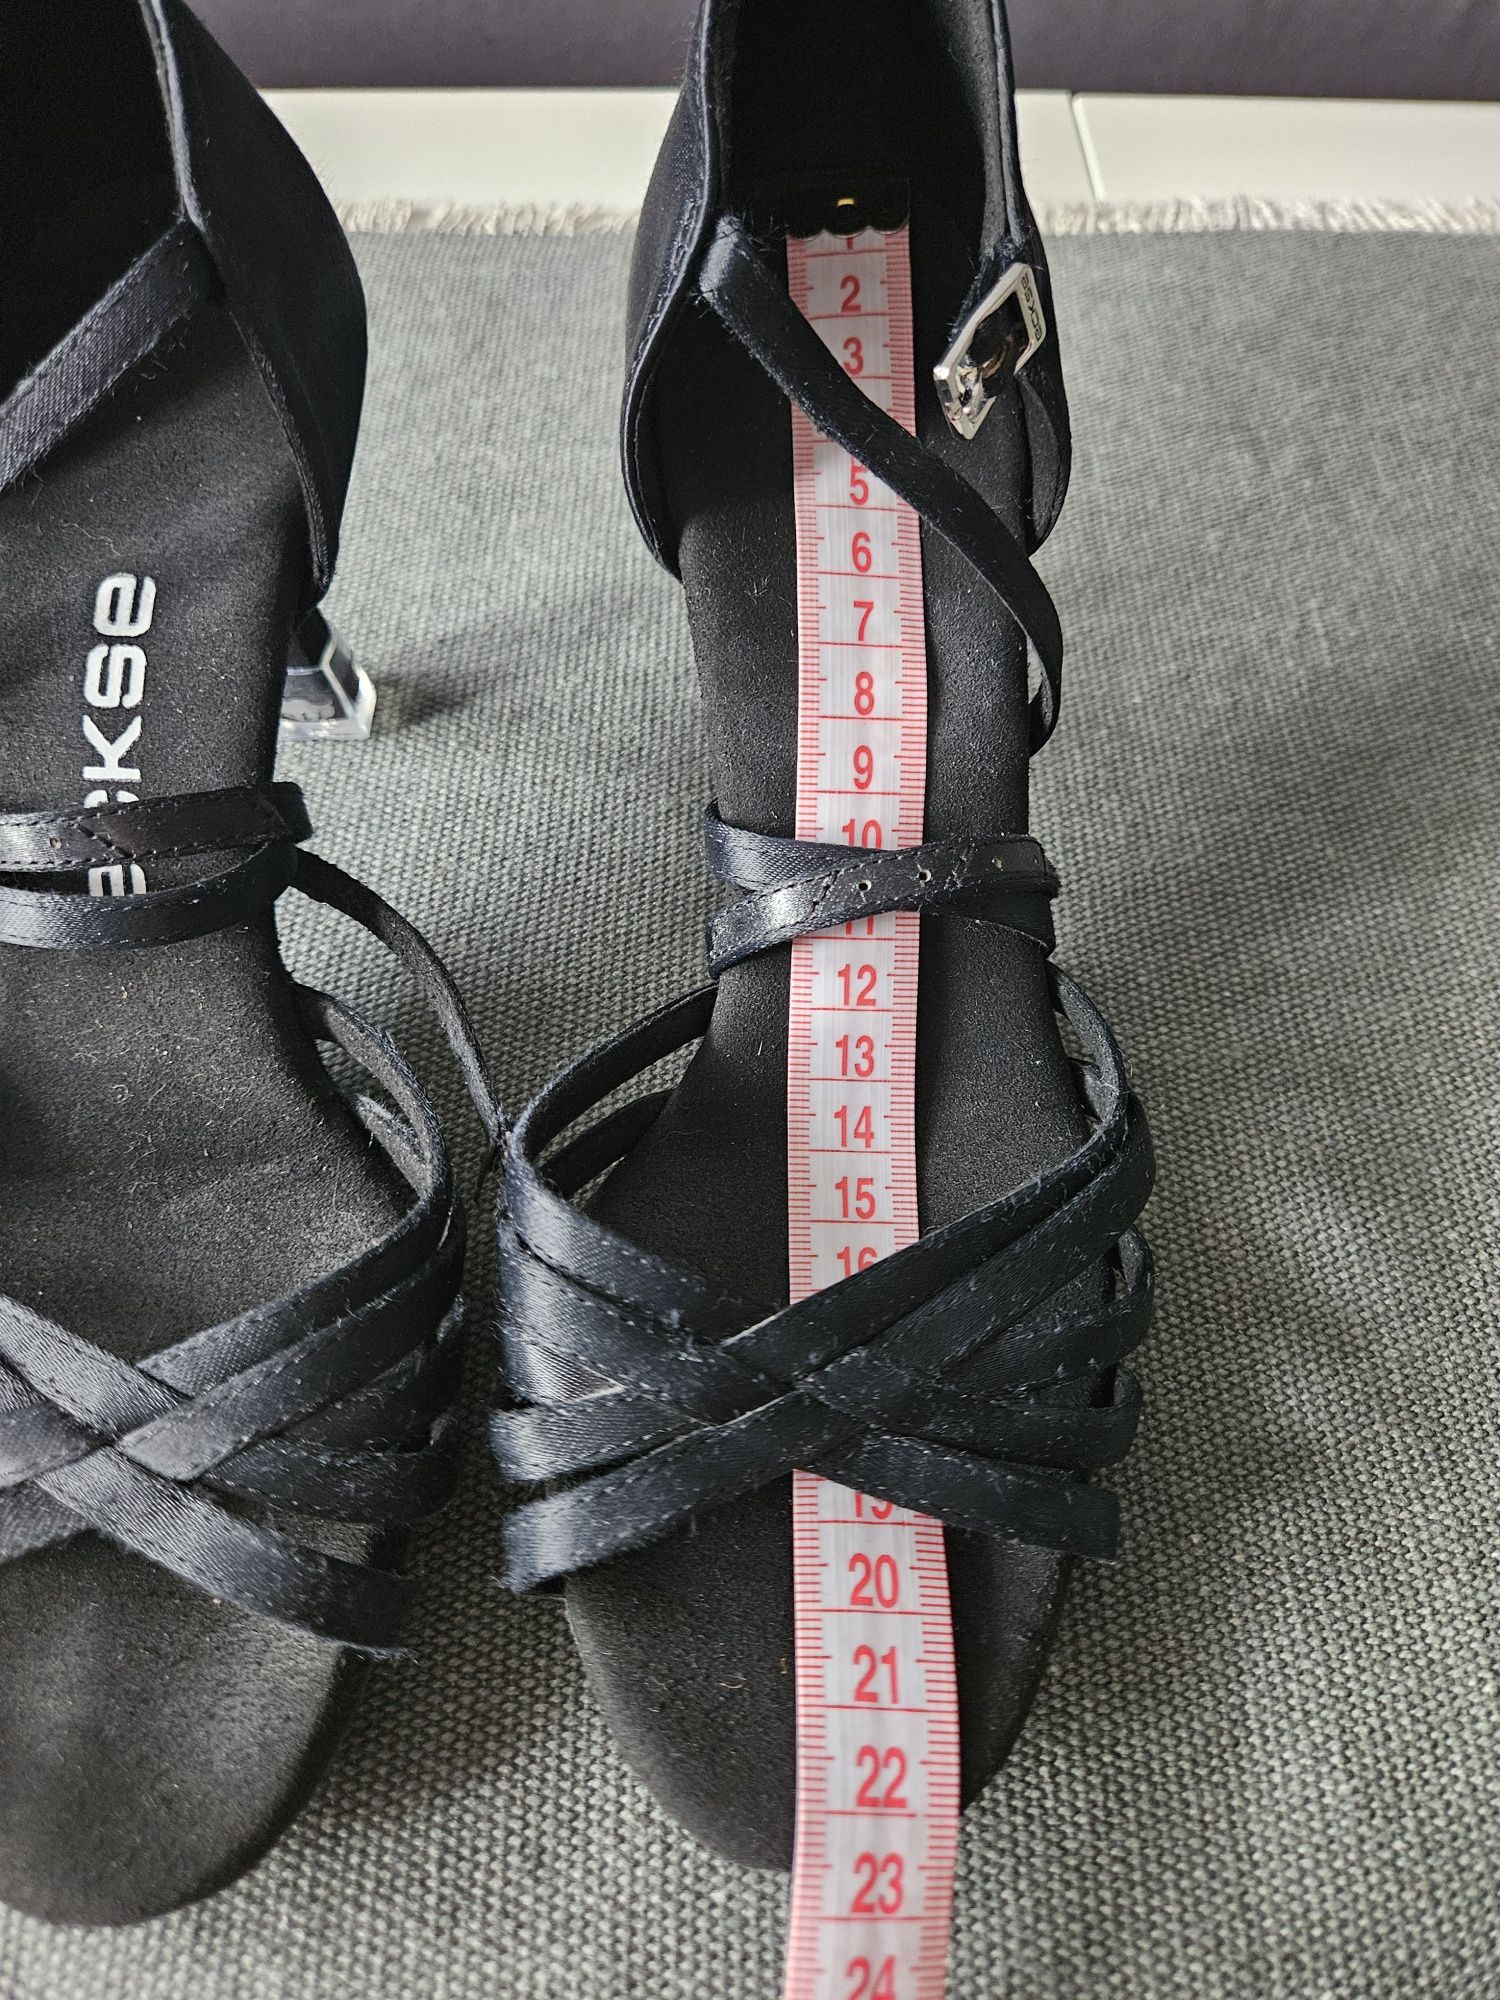 Танцювальні туфлі Eckse  латина 22,5 см чорні